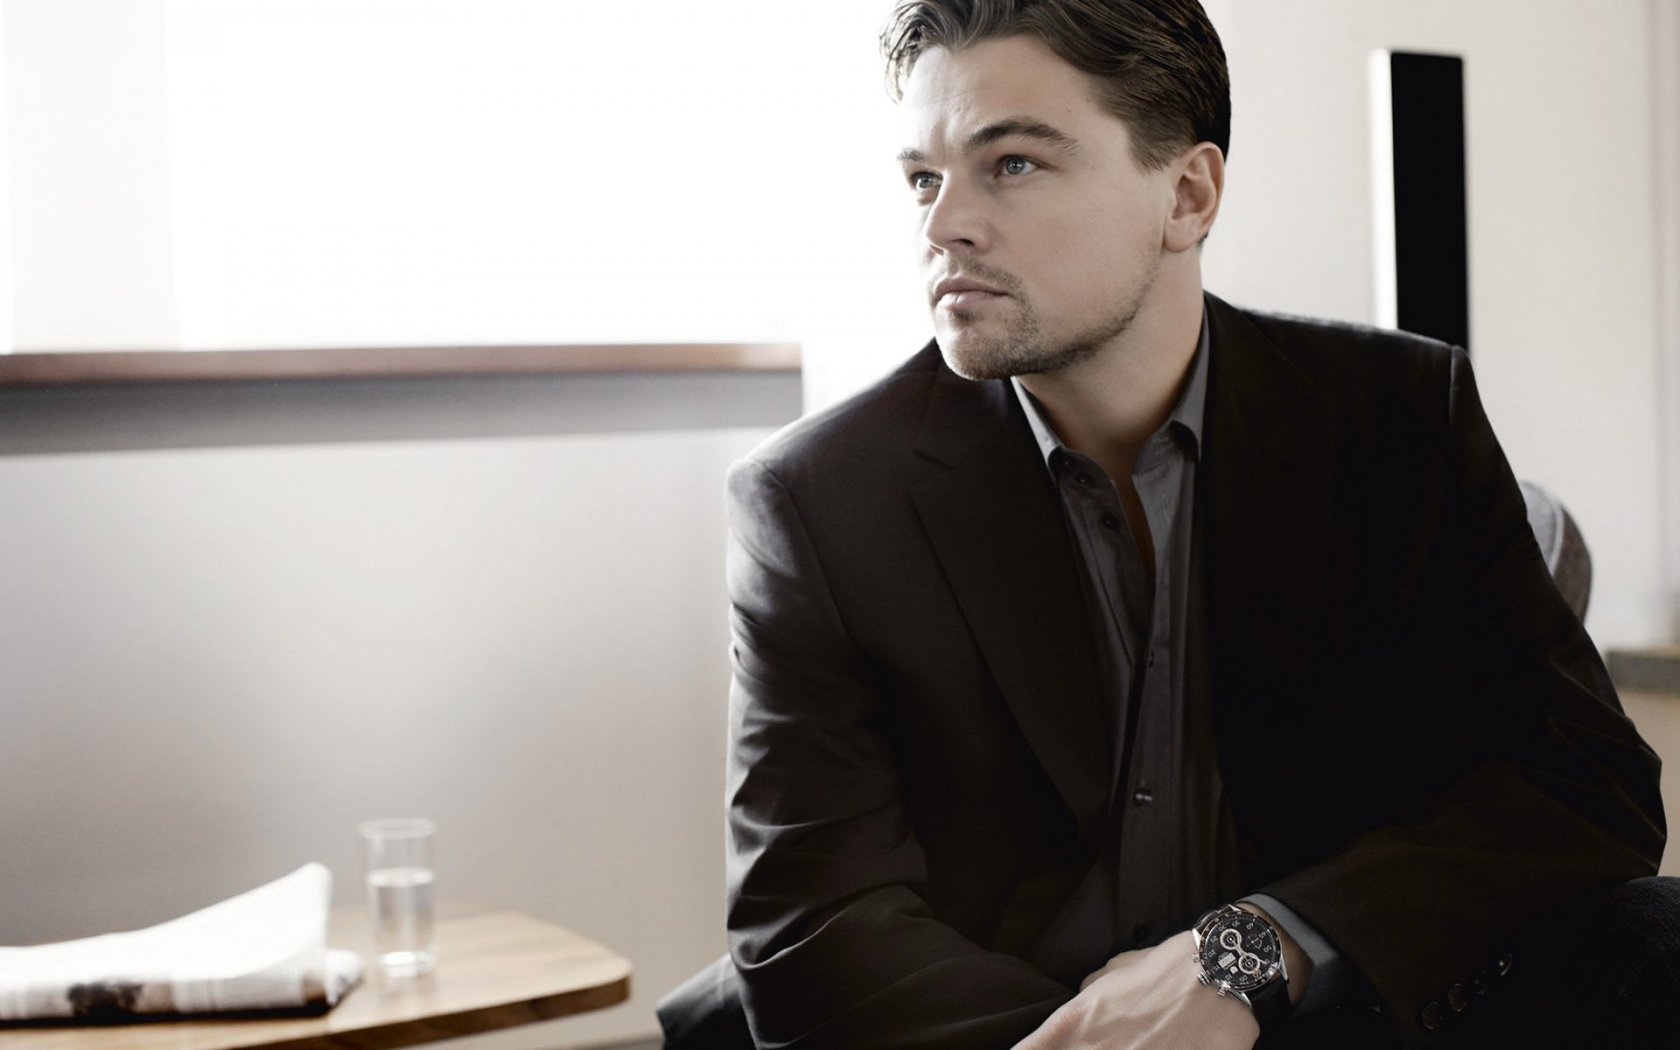 Leonardo DiCaprio in Black for 1680 x 1050 widescreen resolution